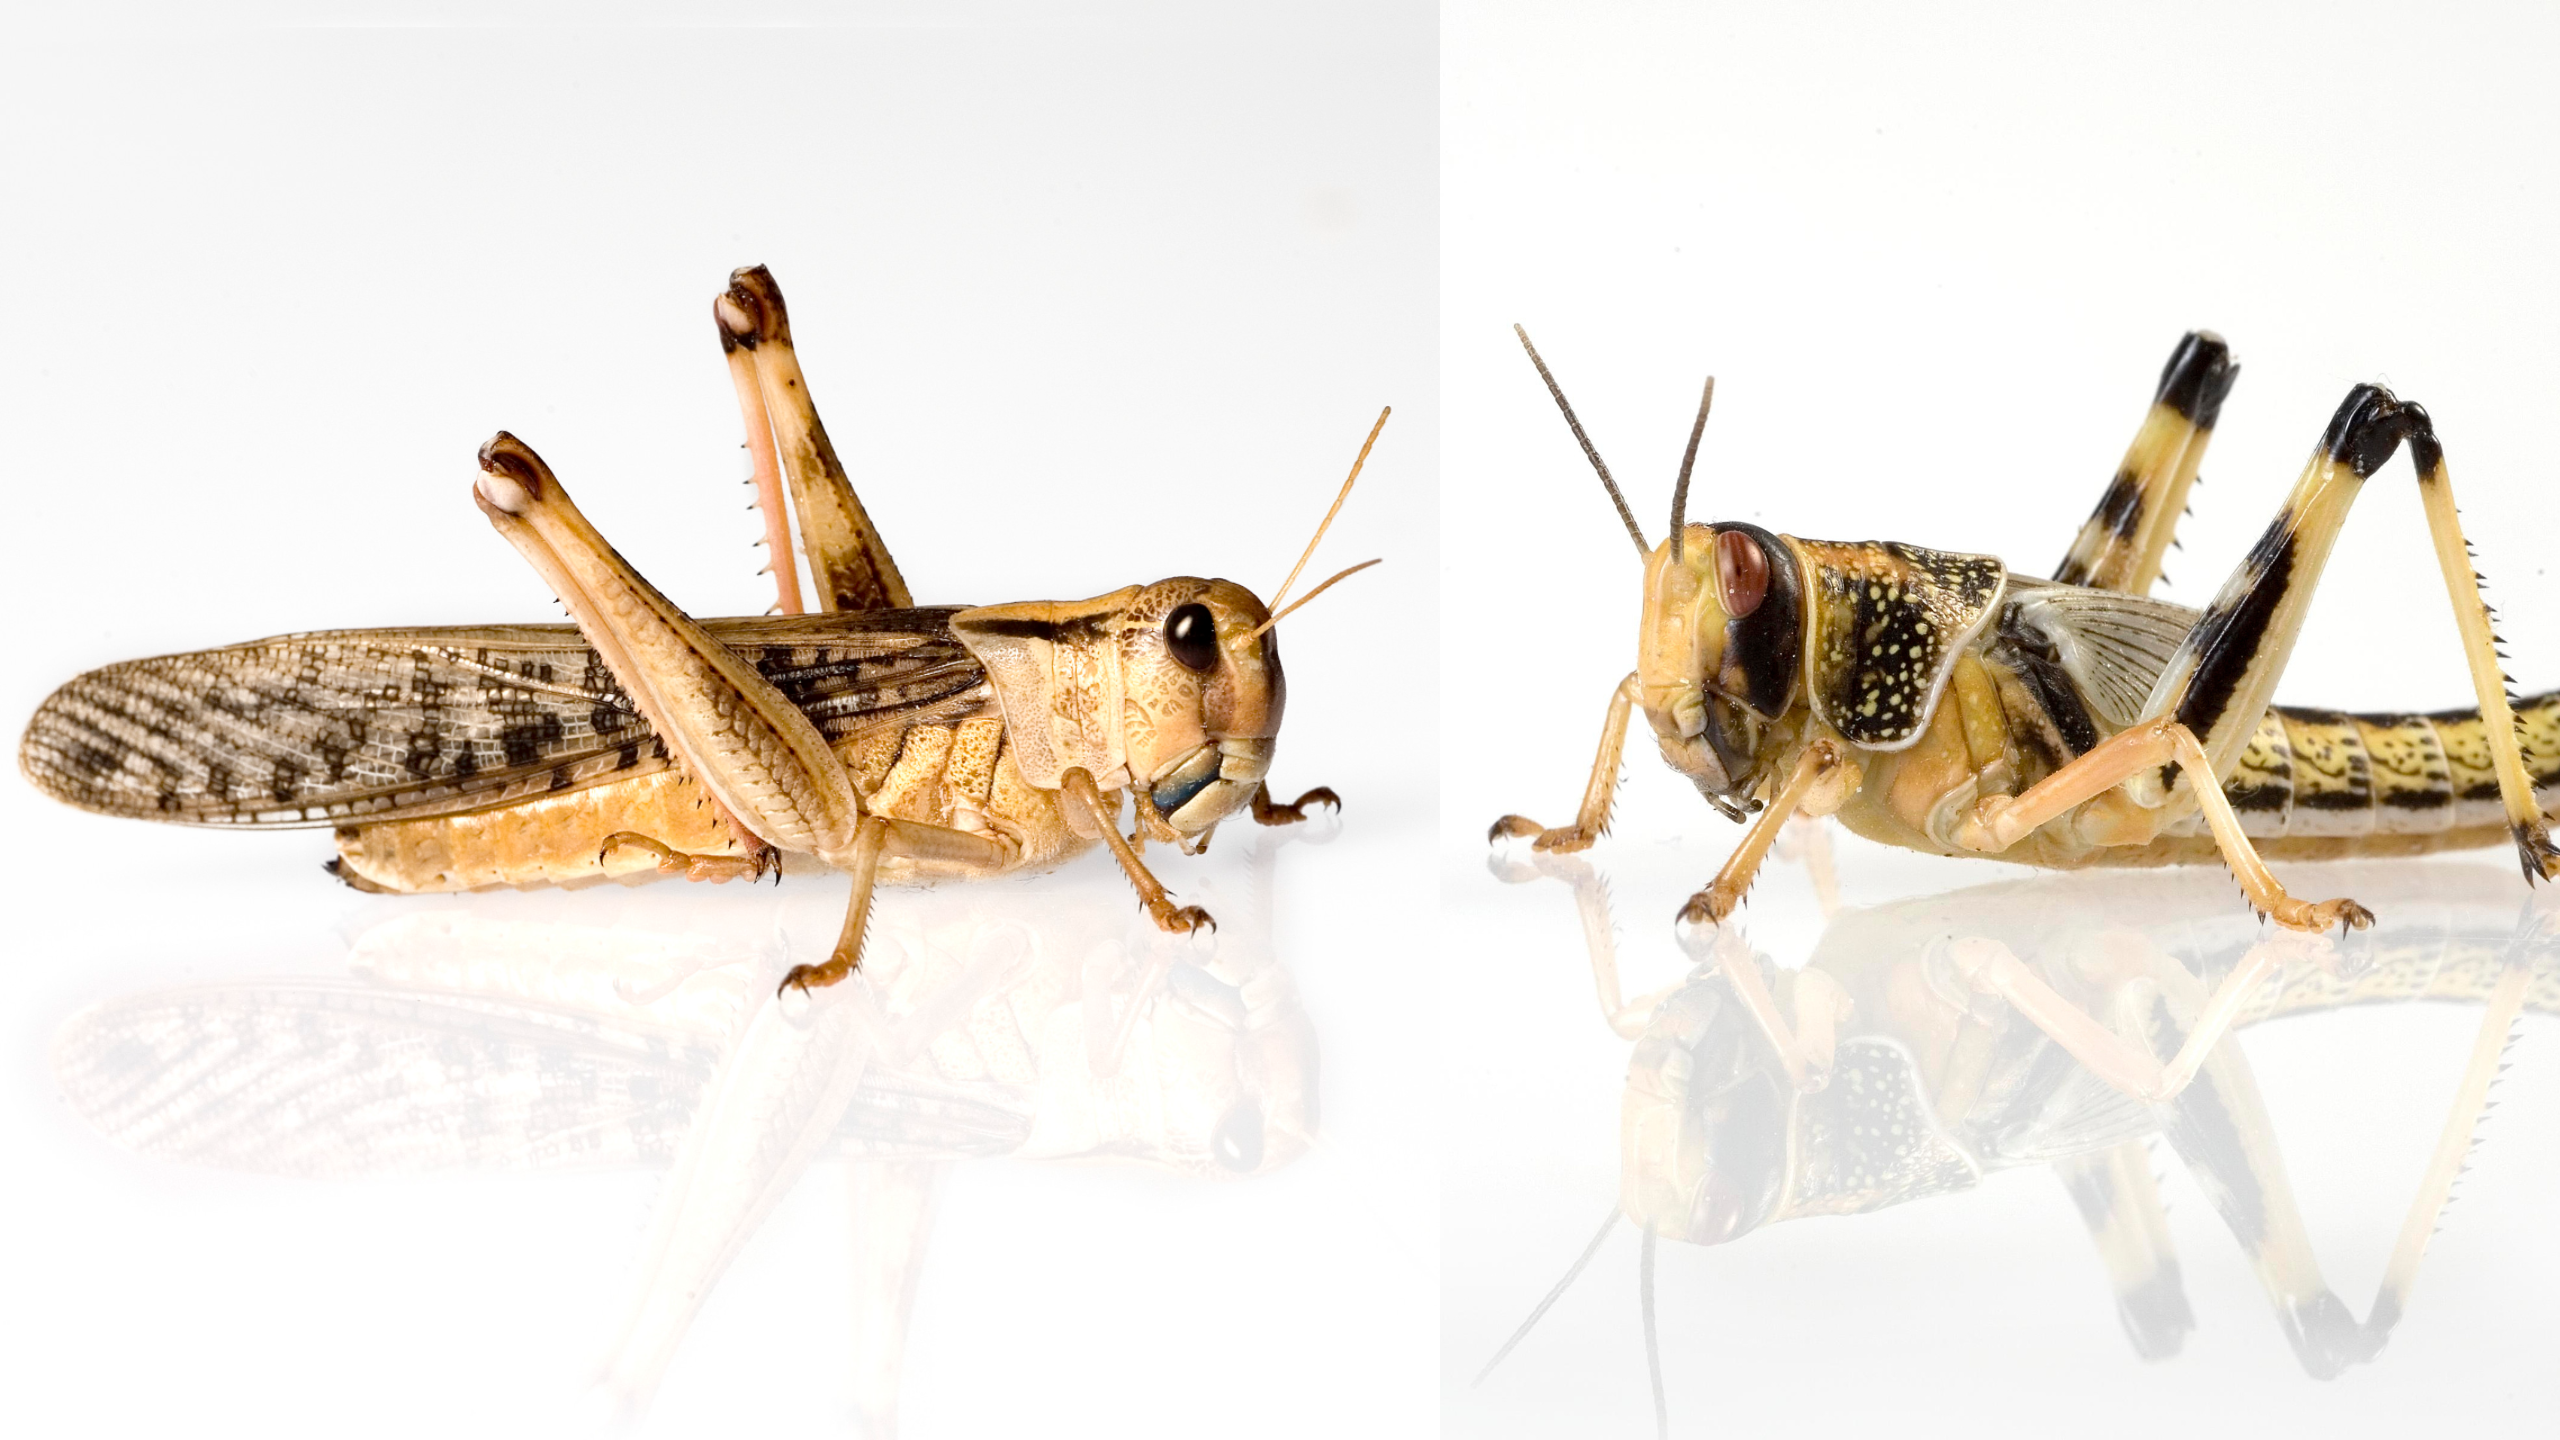 Links zu sehen: die Wanderheuschrecke; auf der rechten Seite: eine Wüstenheuschrecke | fauna topics